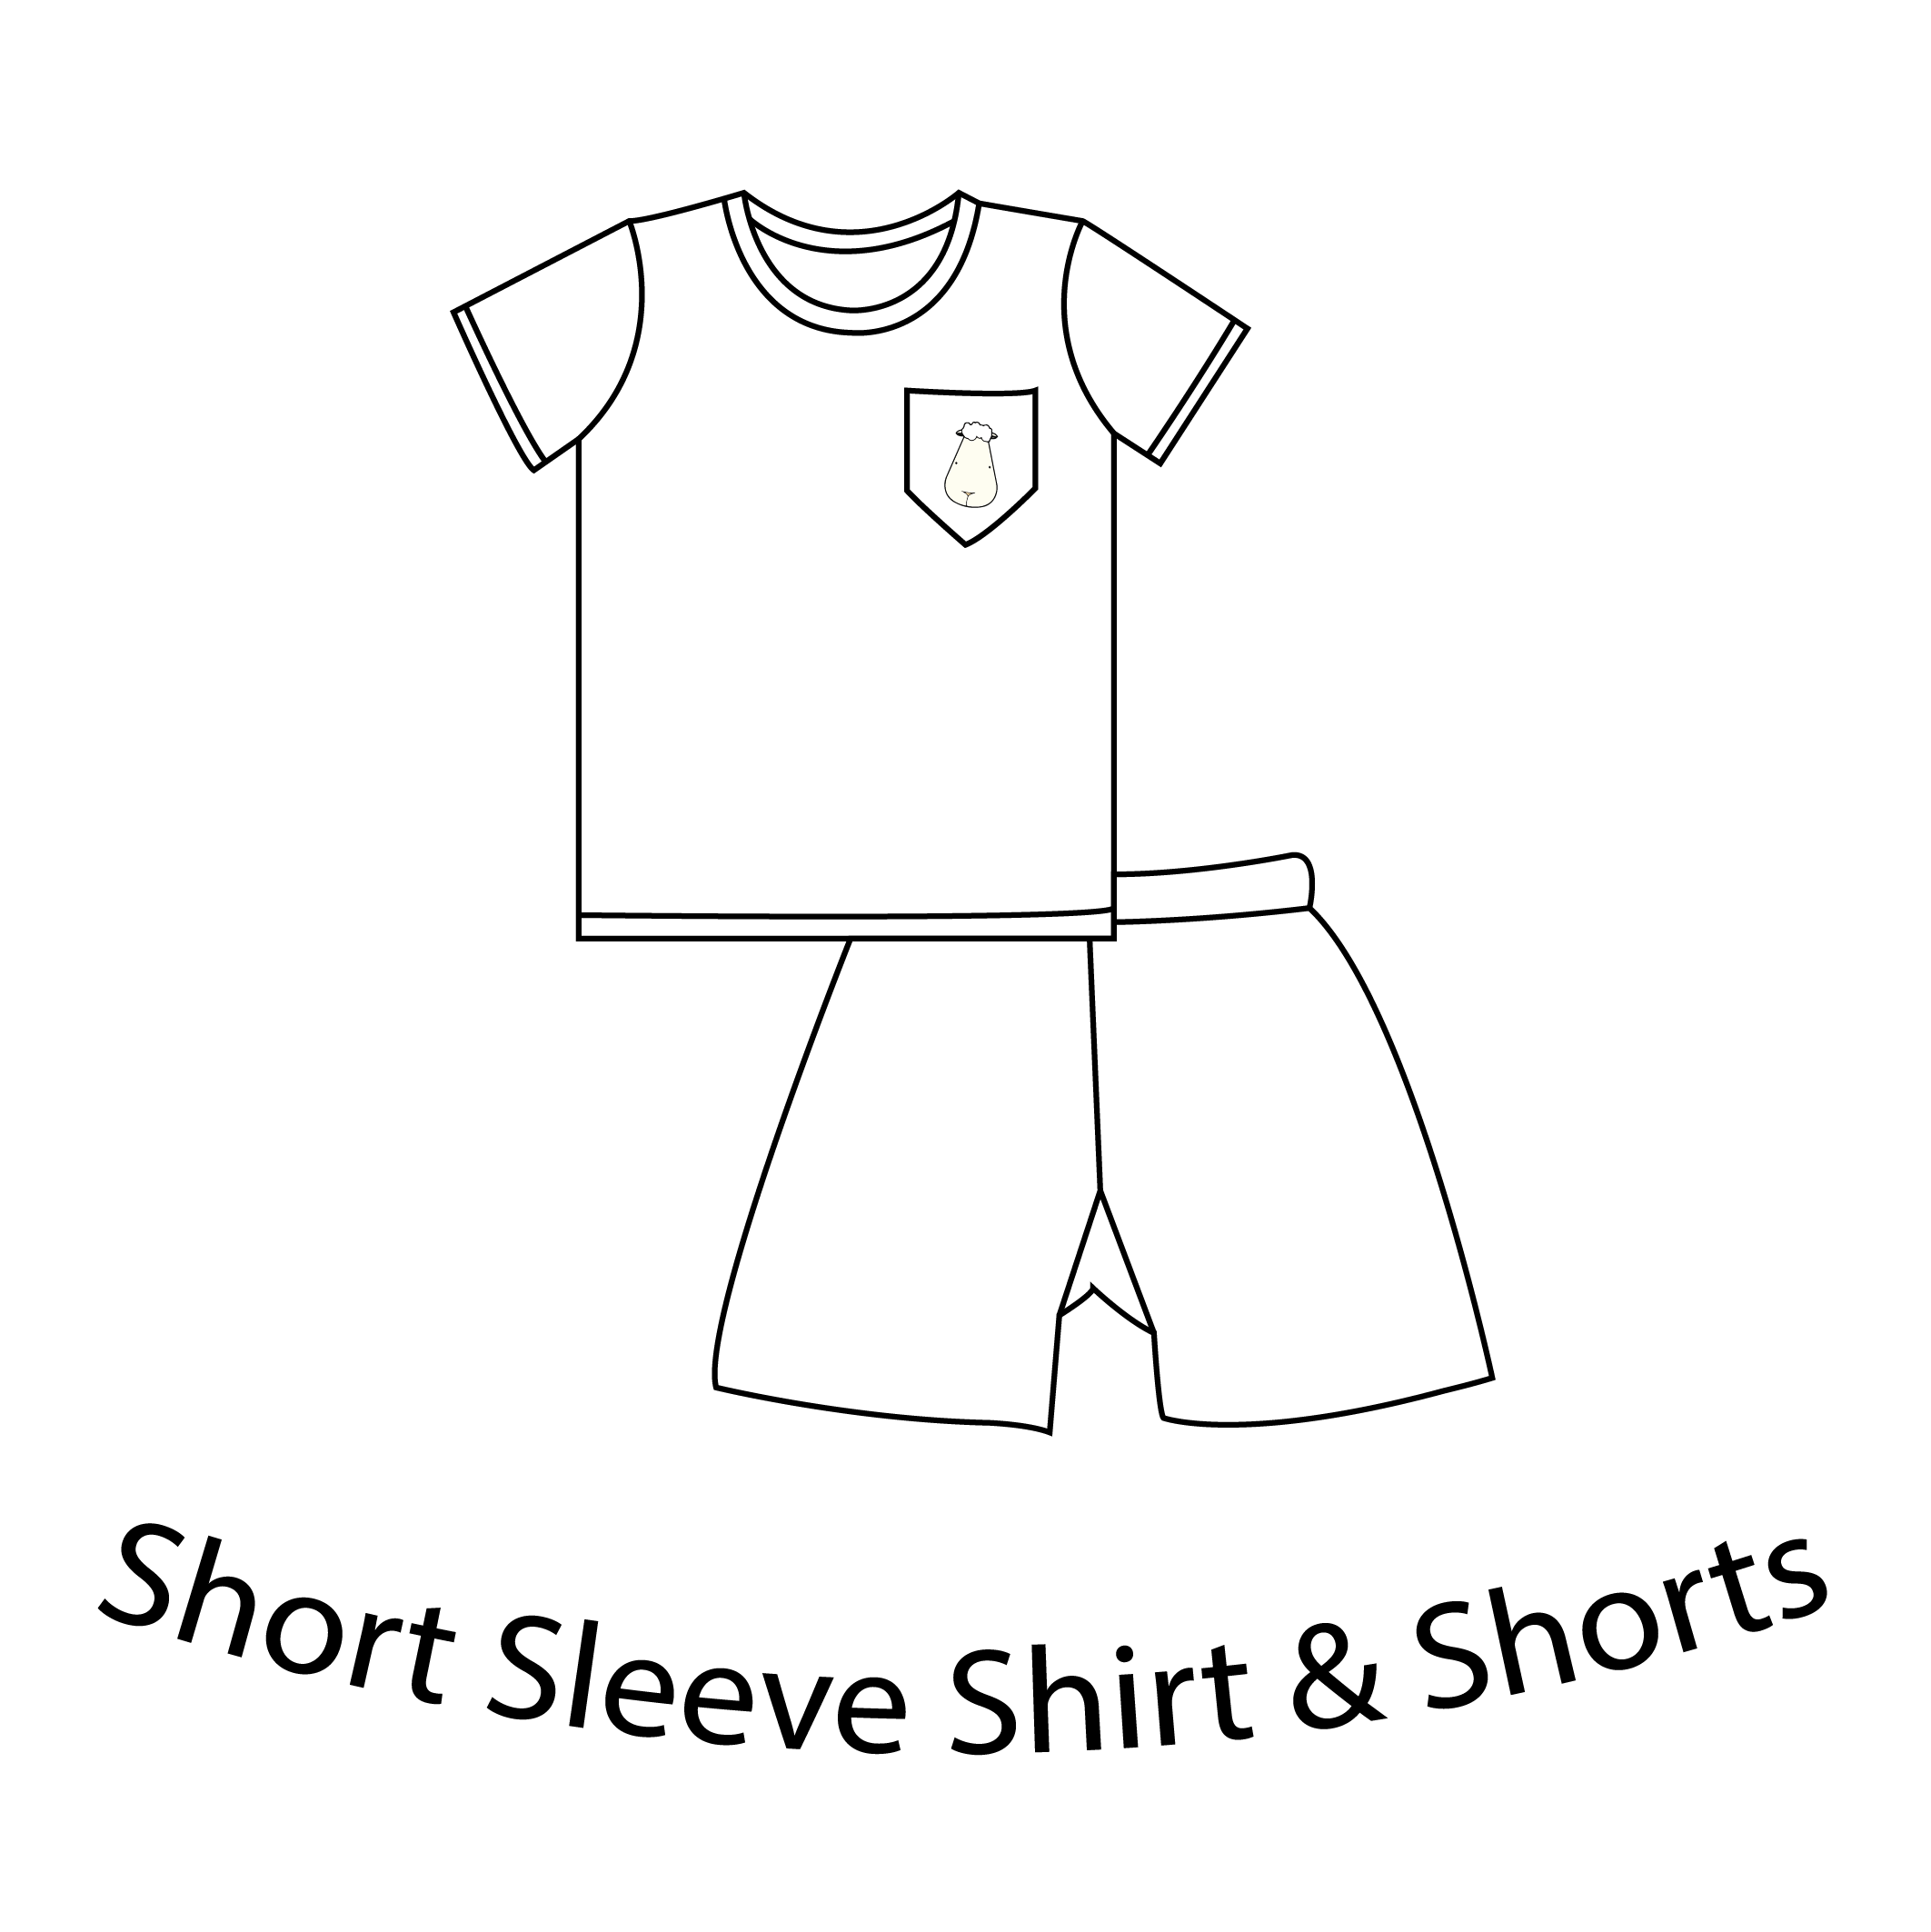 Short Sleeve Shirt & Shorts